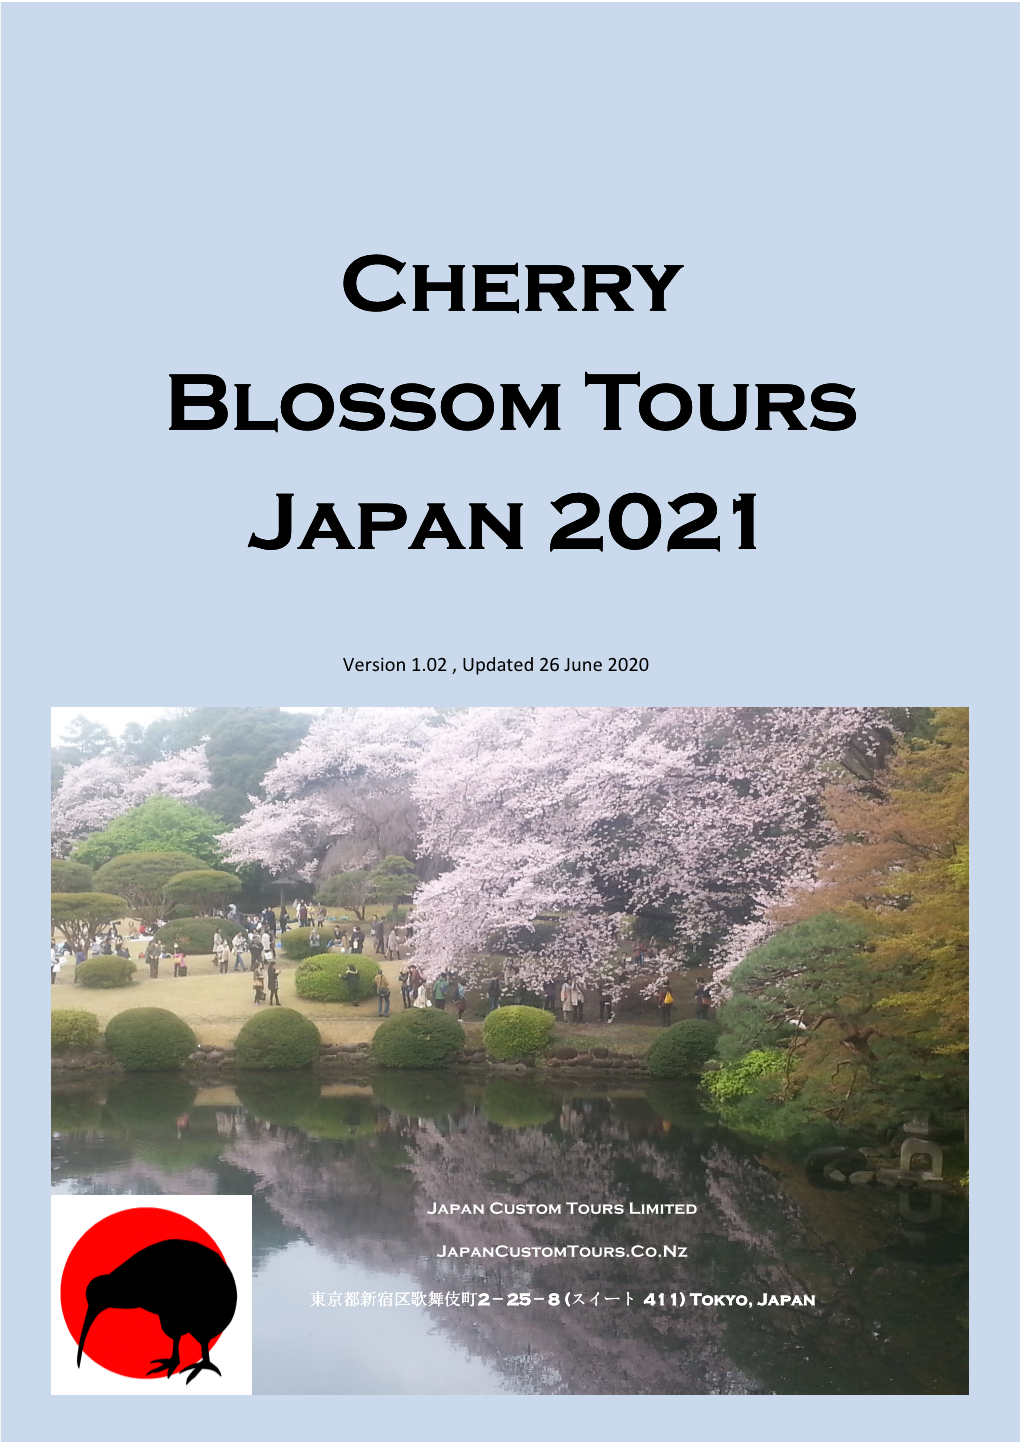 Cherry Blossom Tours Blossom Tours Japan 2021